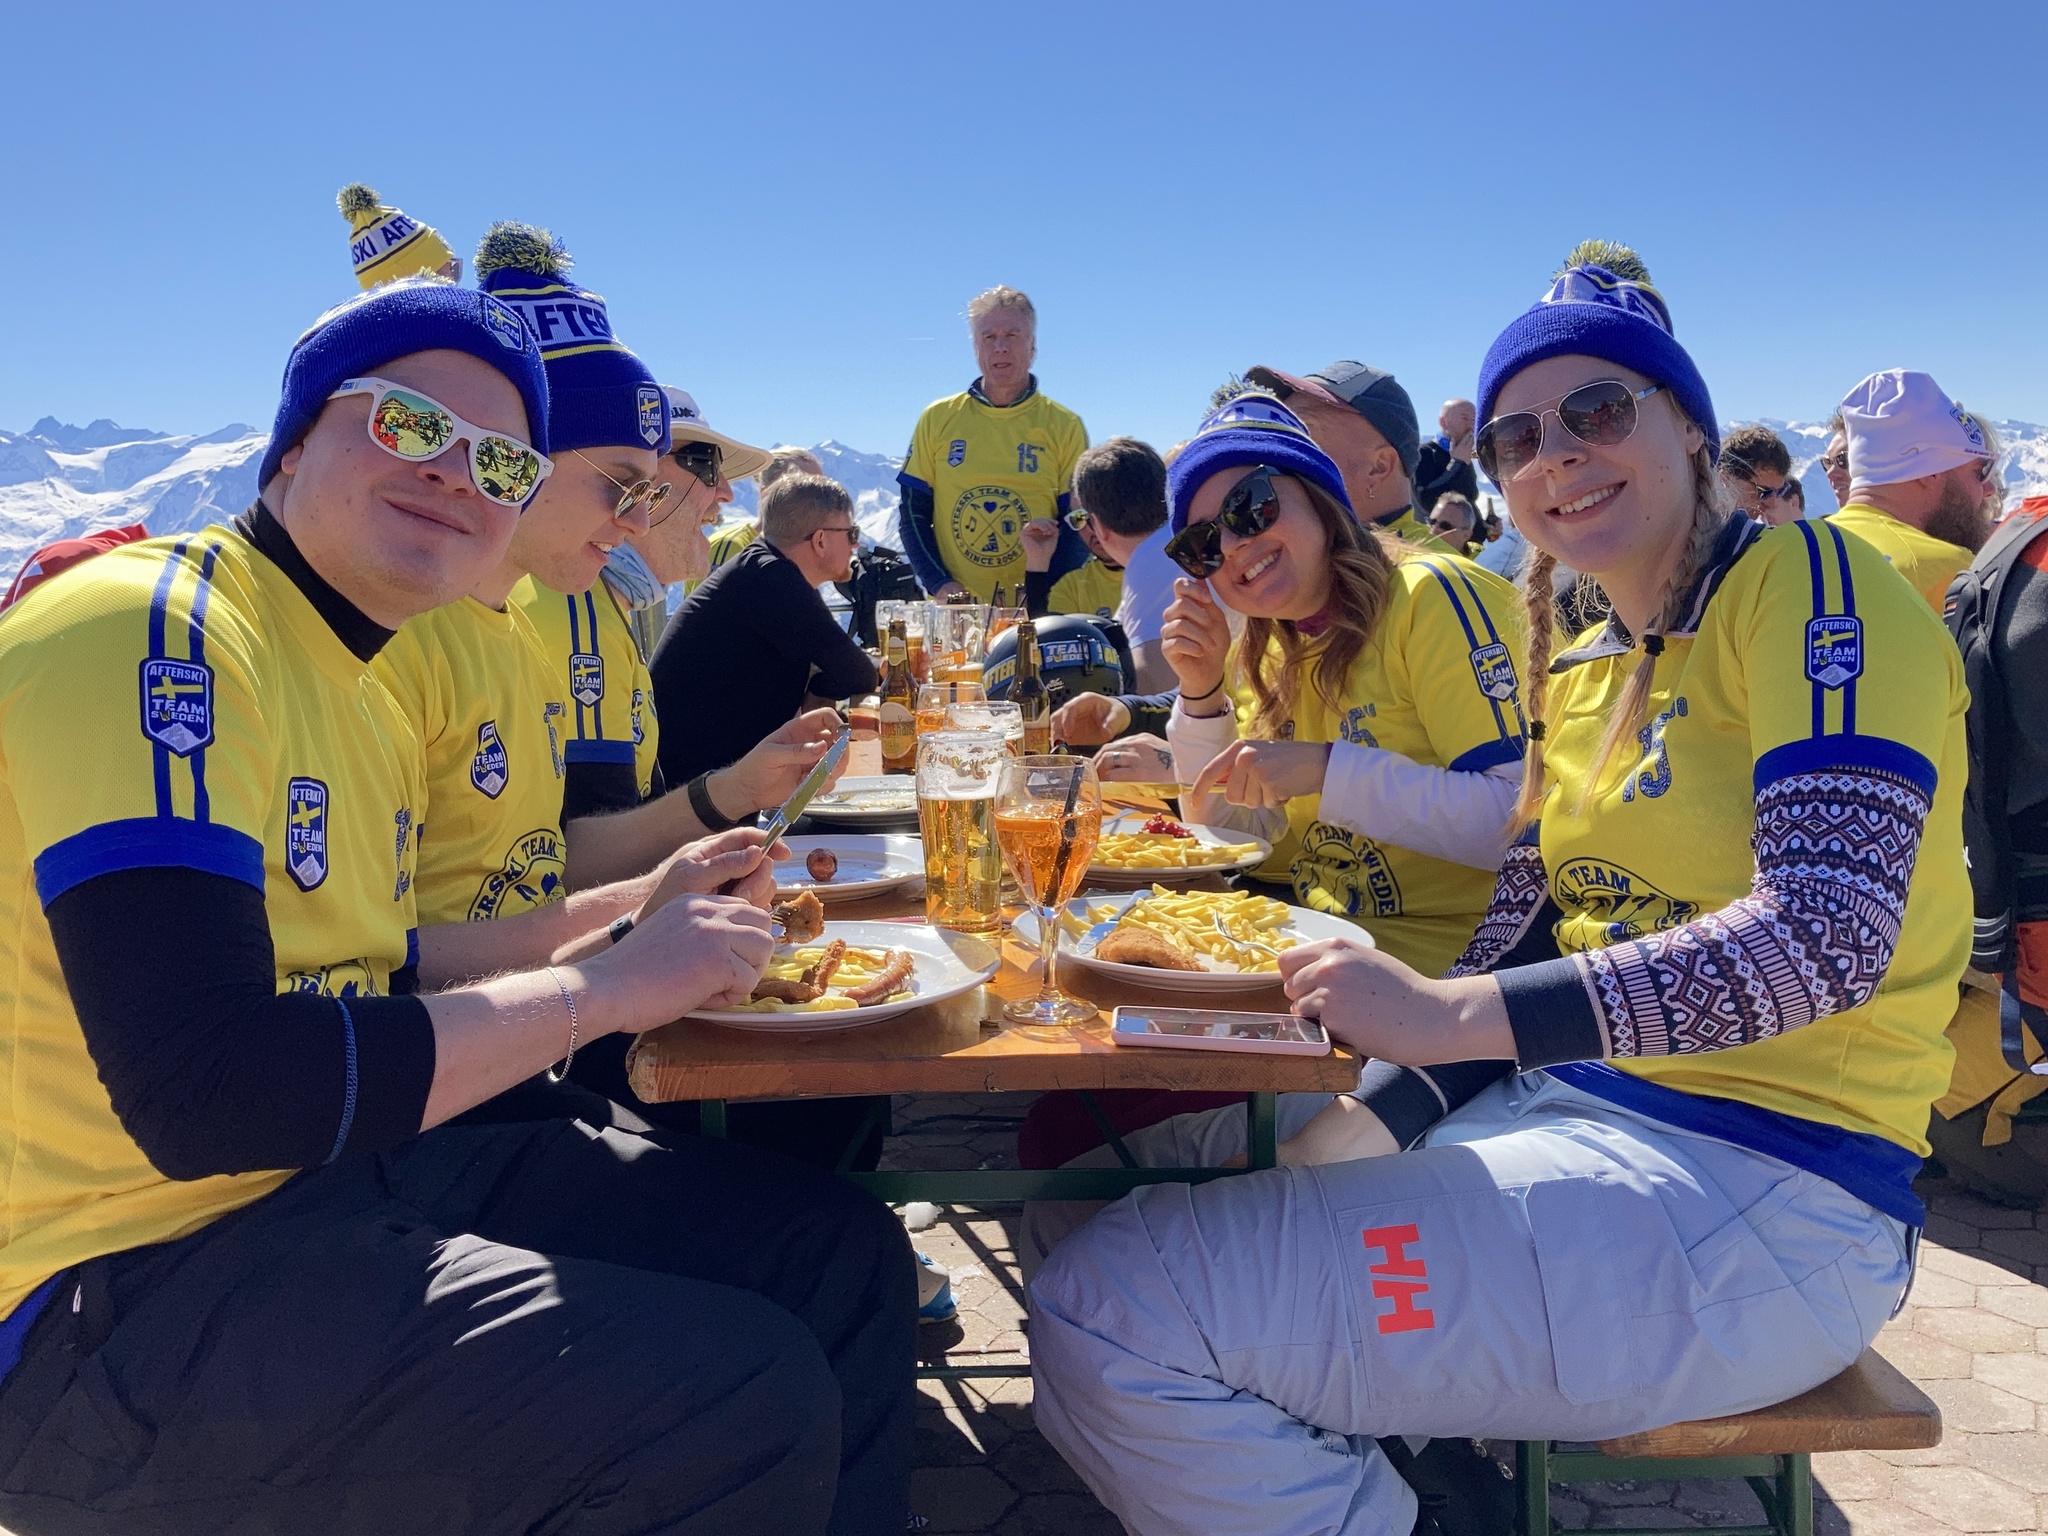 Landslagströjan-Afterski Team Sweden